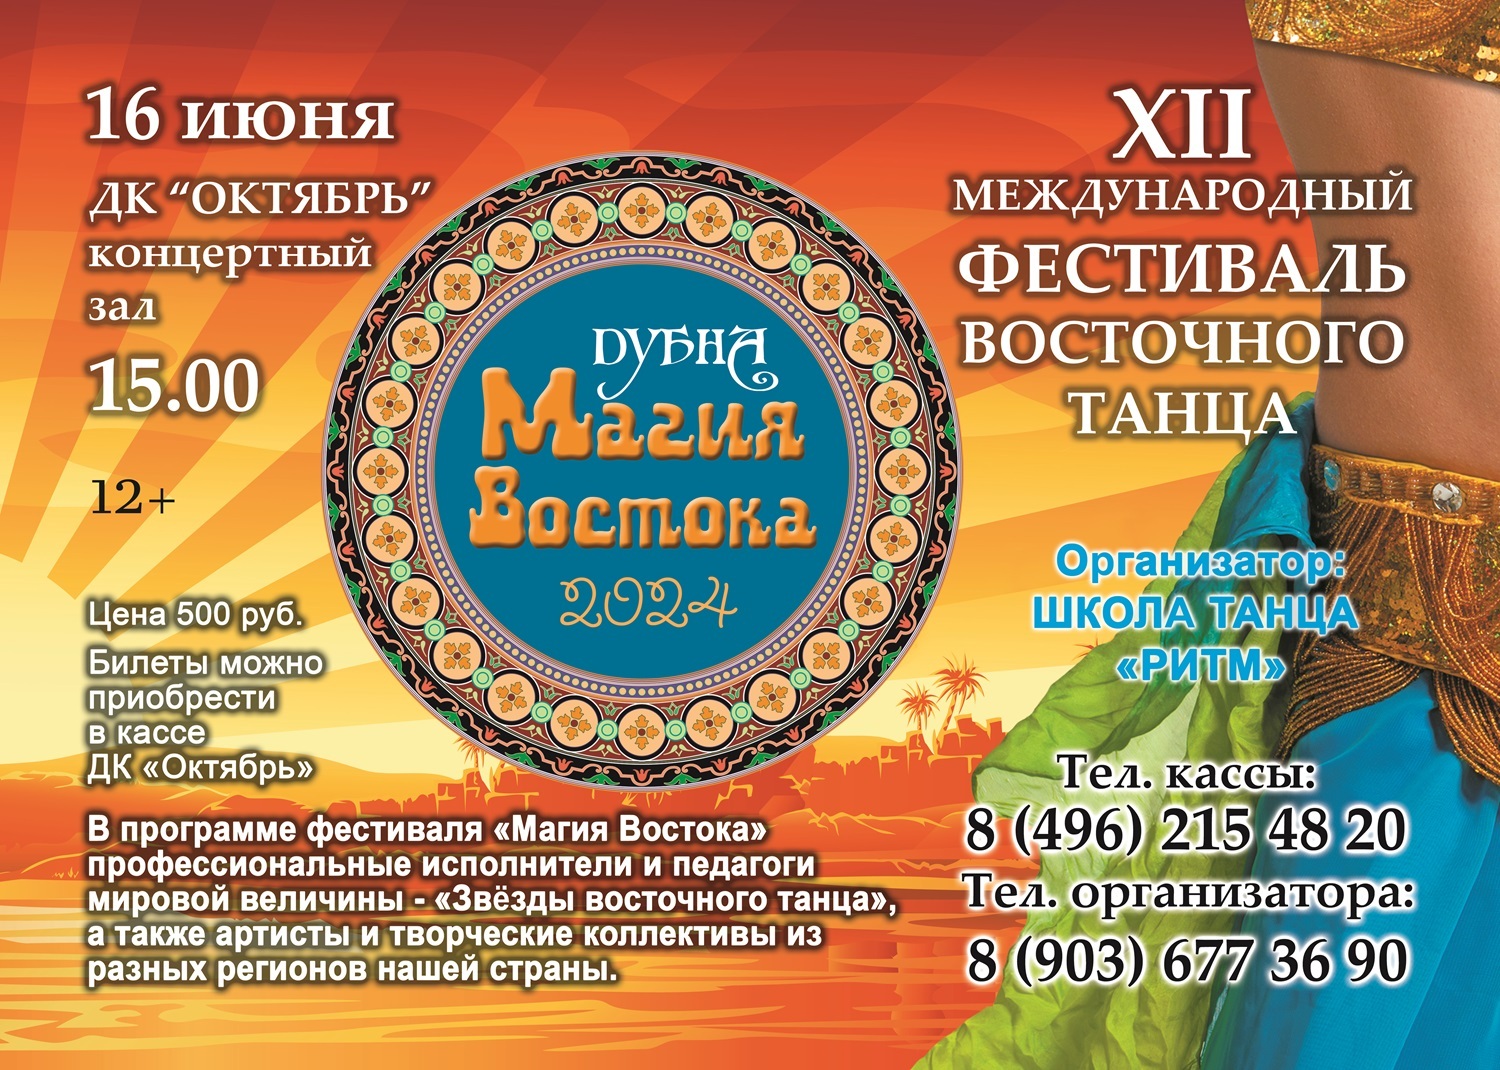 XII Международный фестиваль восточного танца «Магия Востока»